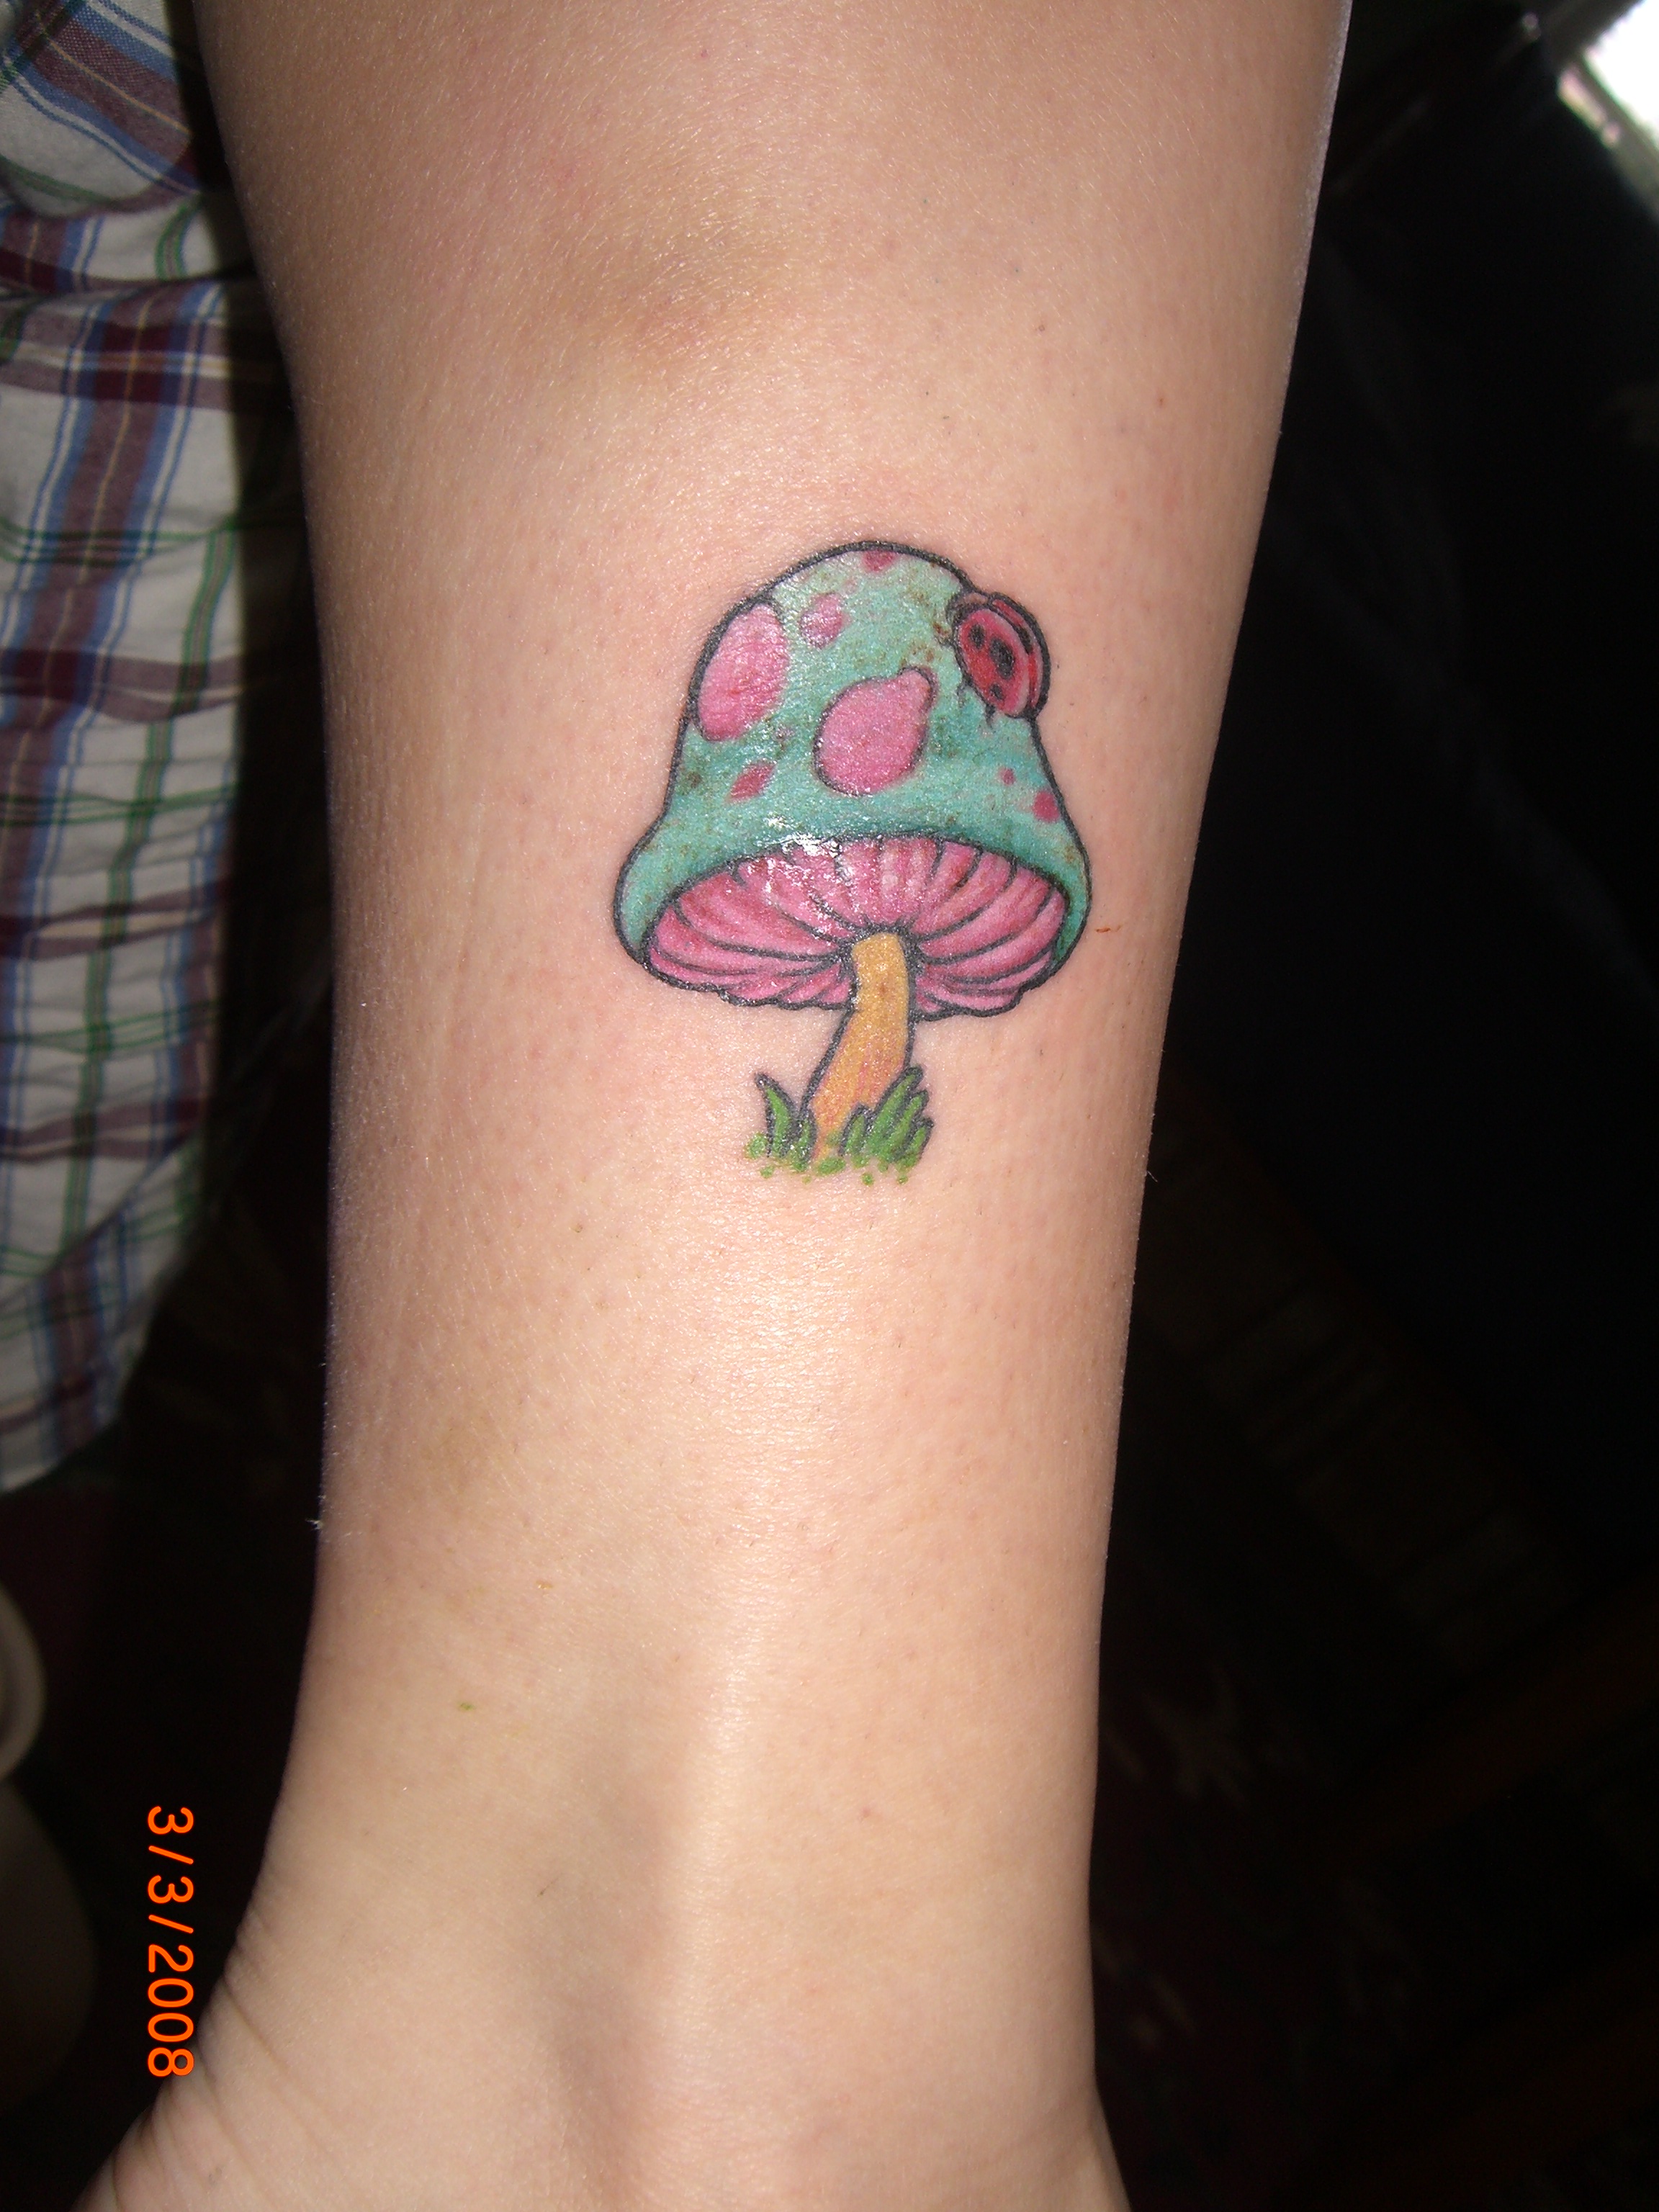 Colored Mushroom Tattoo On Leg